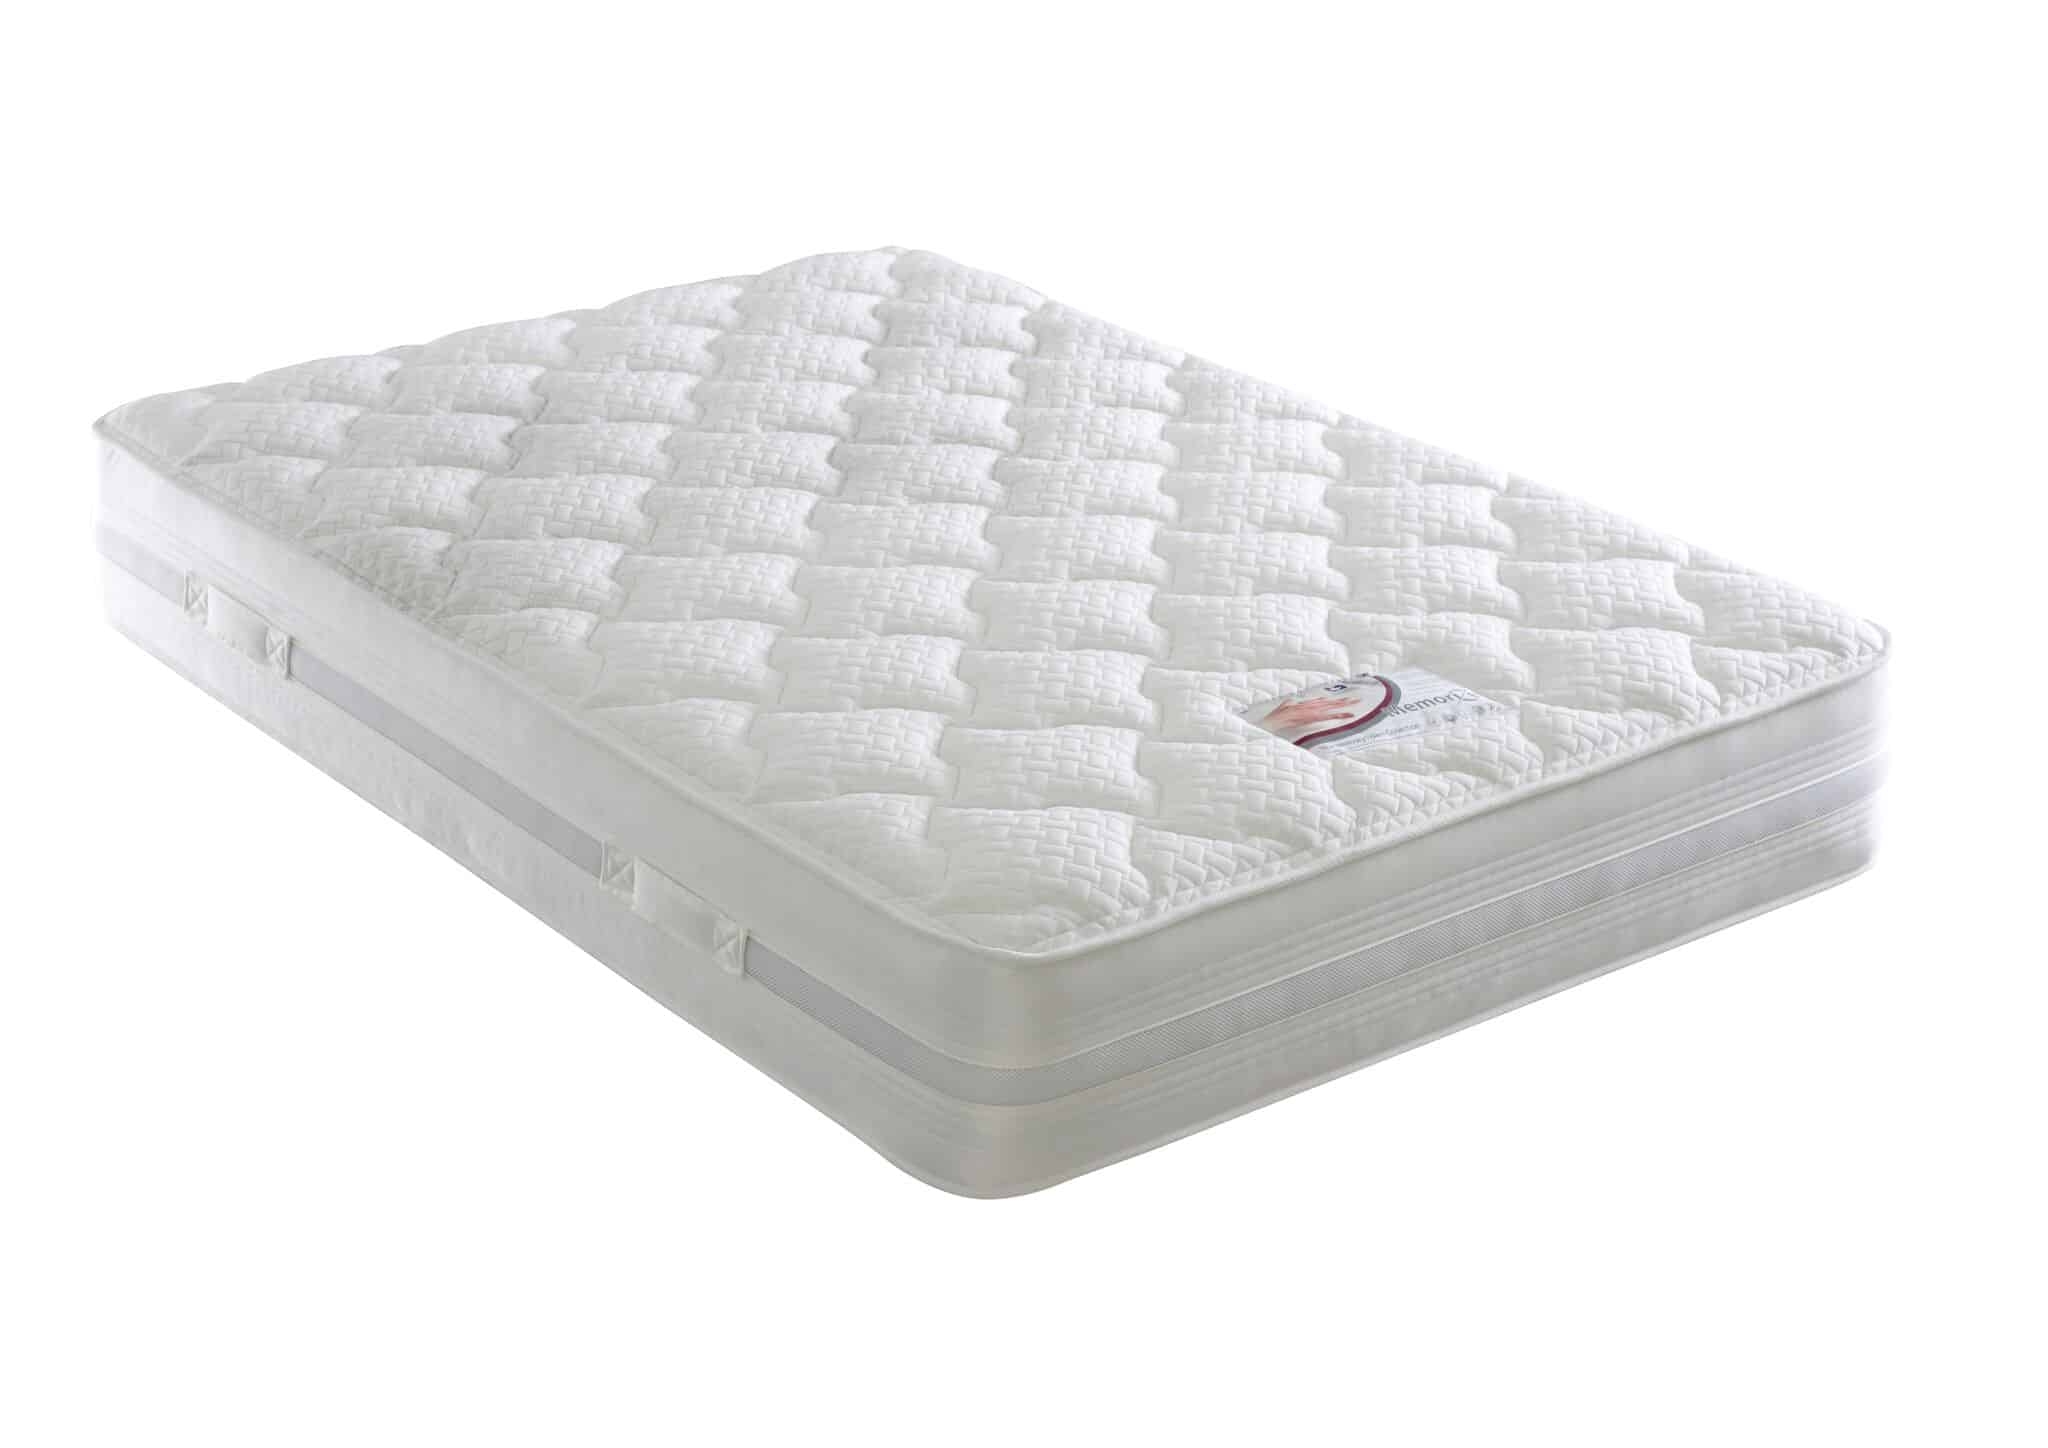 Dura Beds Memory Foam Mattress – Memorize Mattress – Small Single – Airflow Cushion Medium Firmness Mattress